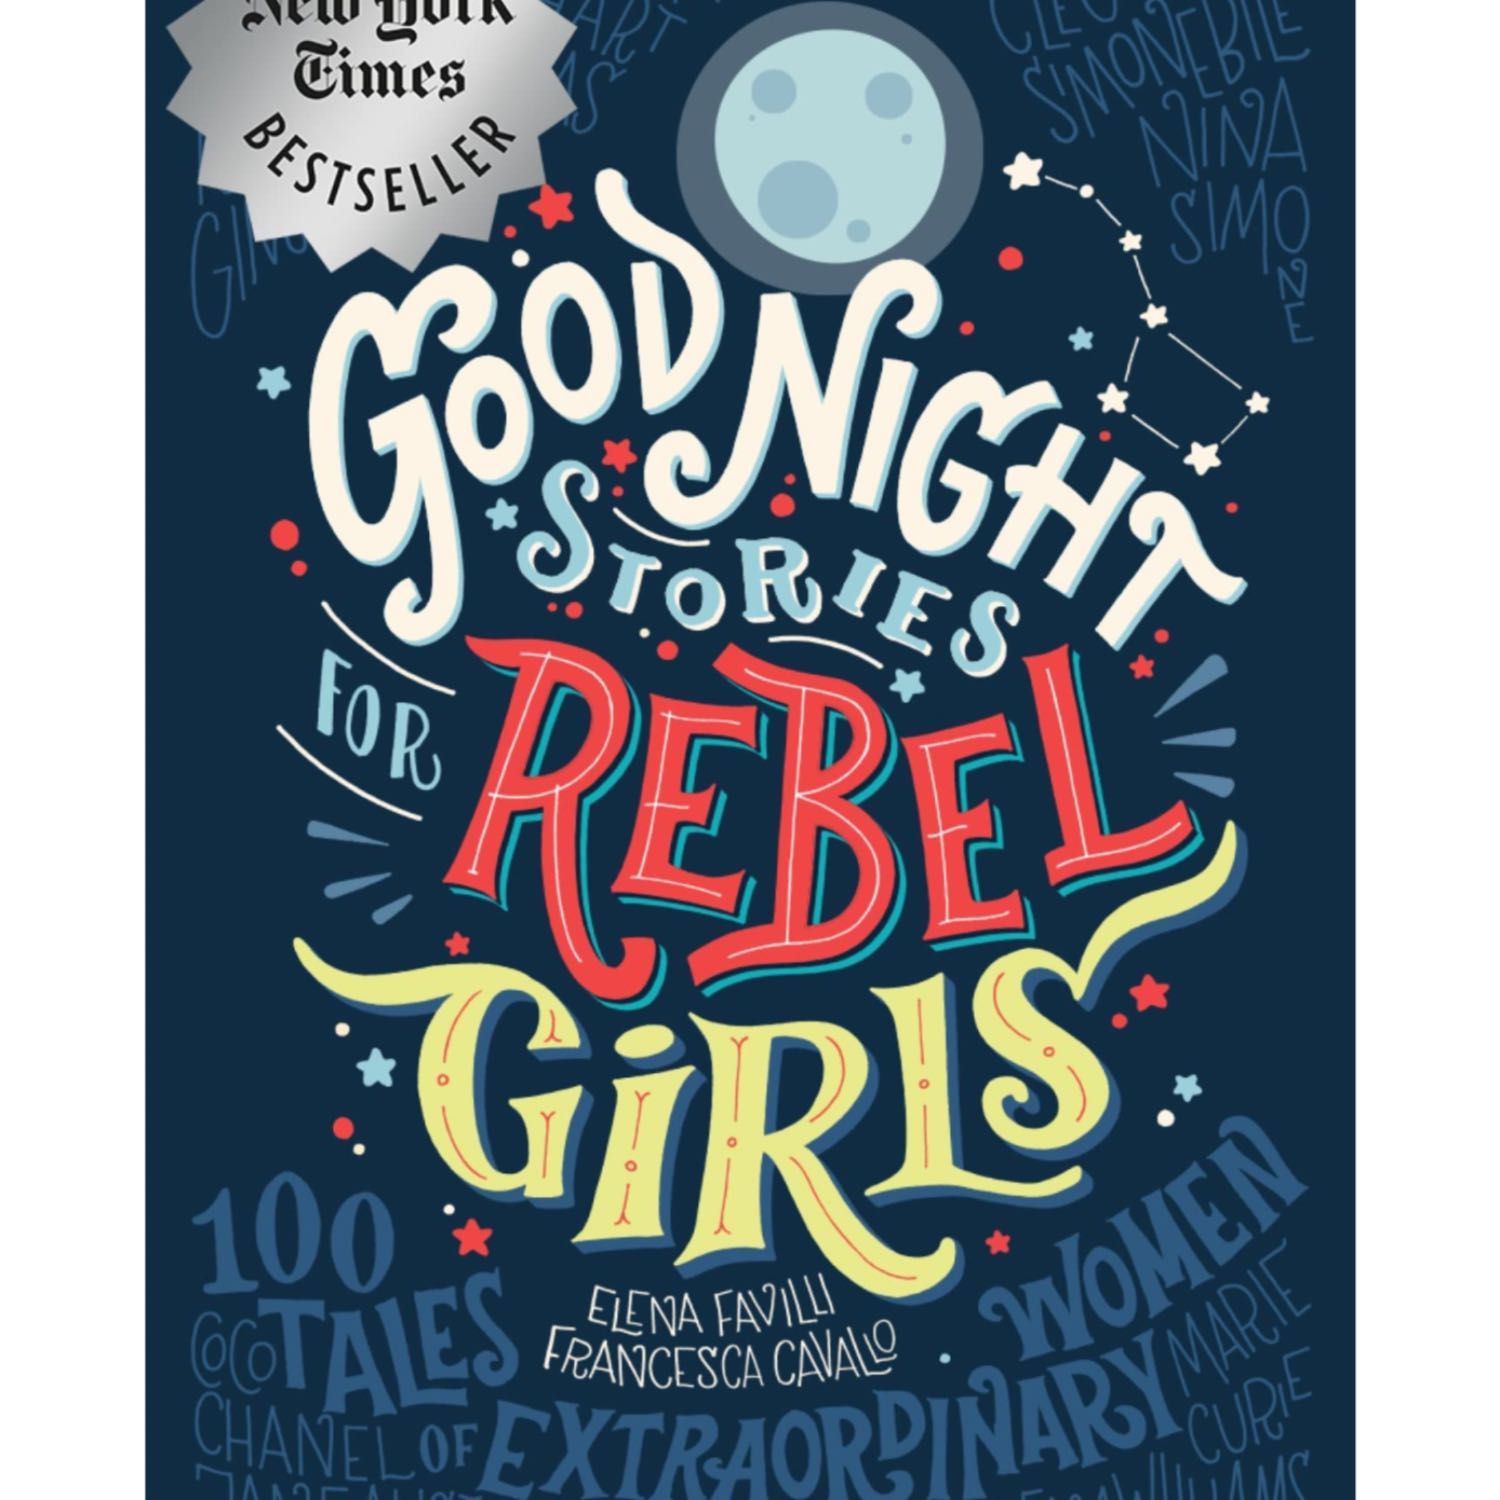 Goodnight Stories for Rebel Girls: Coy Mathis